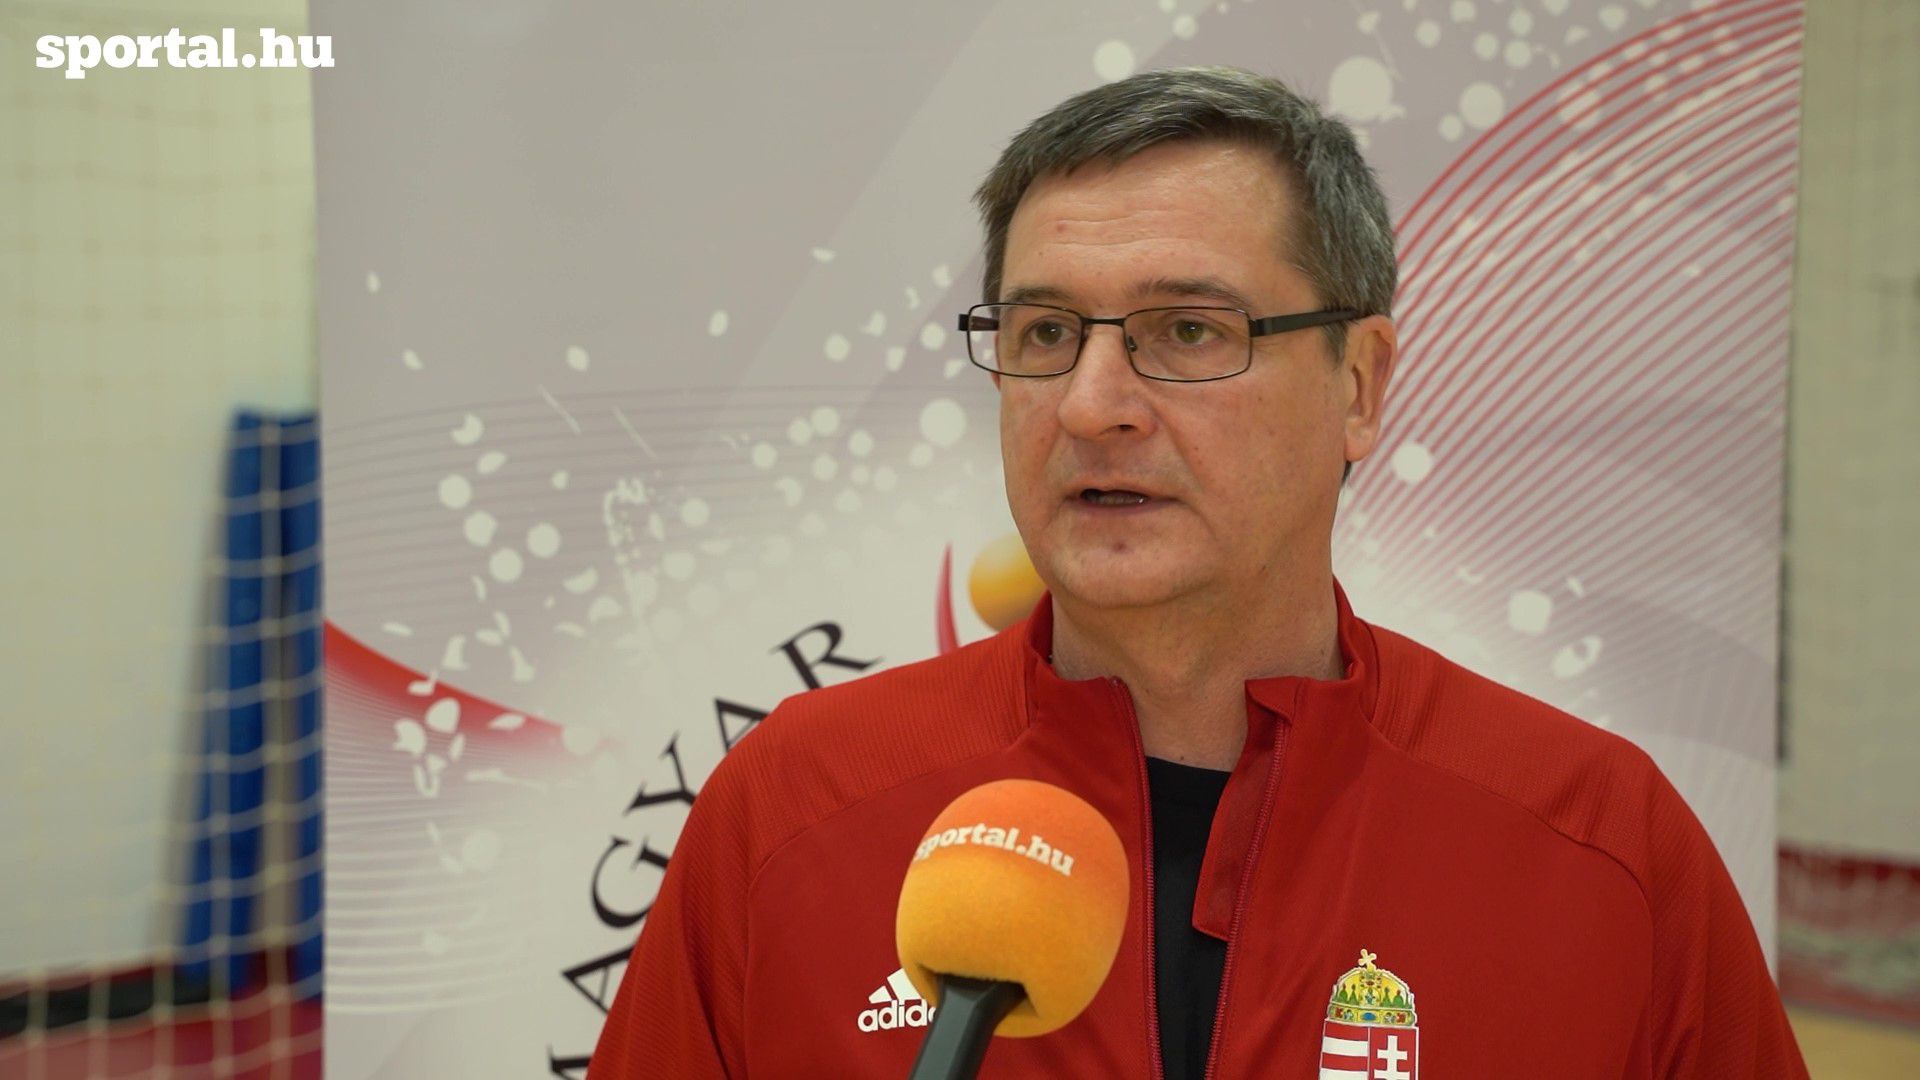 Golovin Vlagyimir szerint egyáltalán nem reménytelen a magyar válogatott helyzete